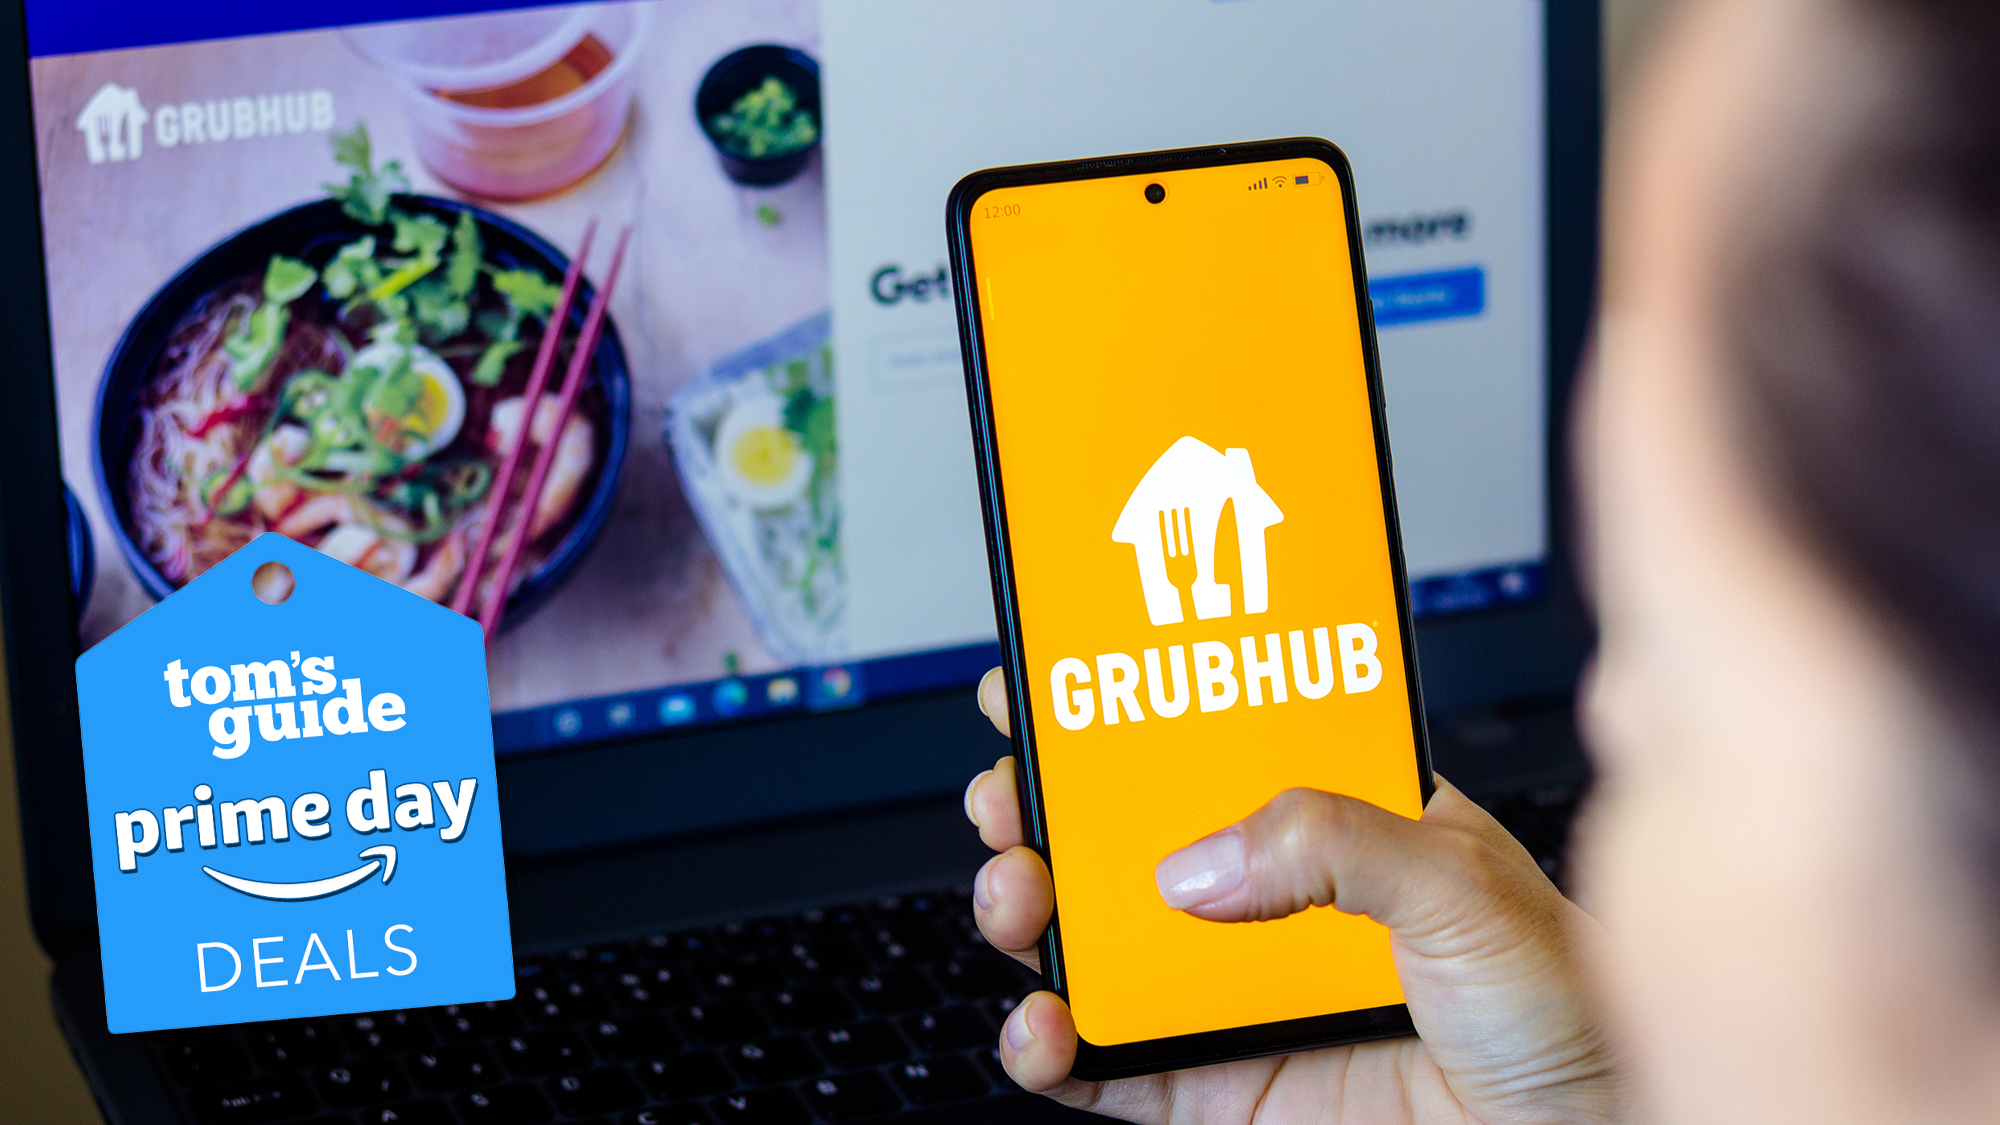 Un téléphone avec un logo Grubhub est en main au-dessus d'un ordinateur portable avec le site Grubhub